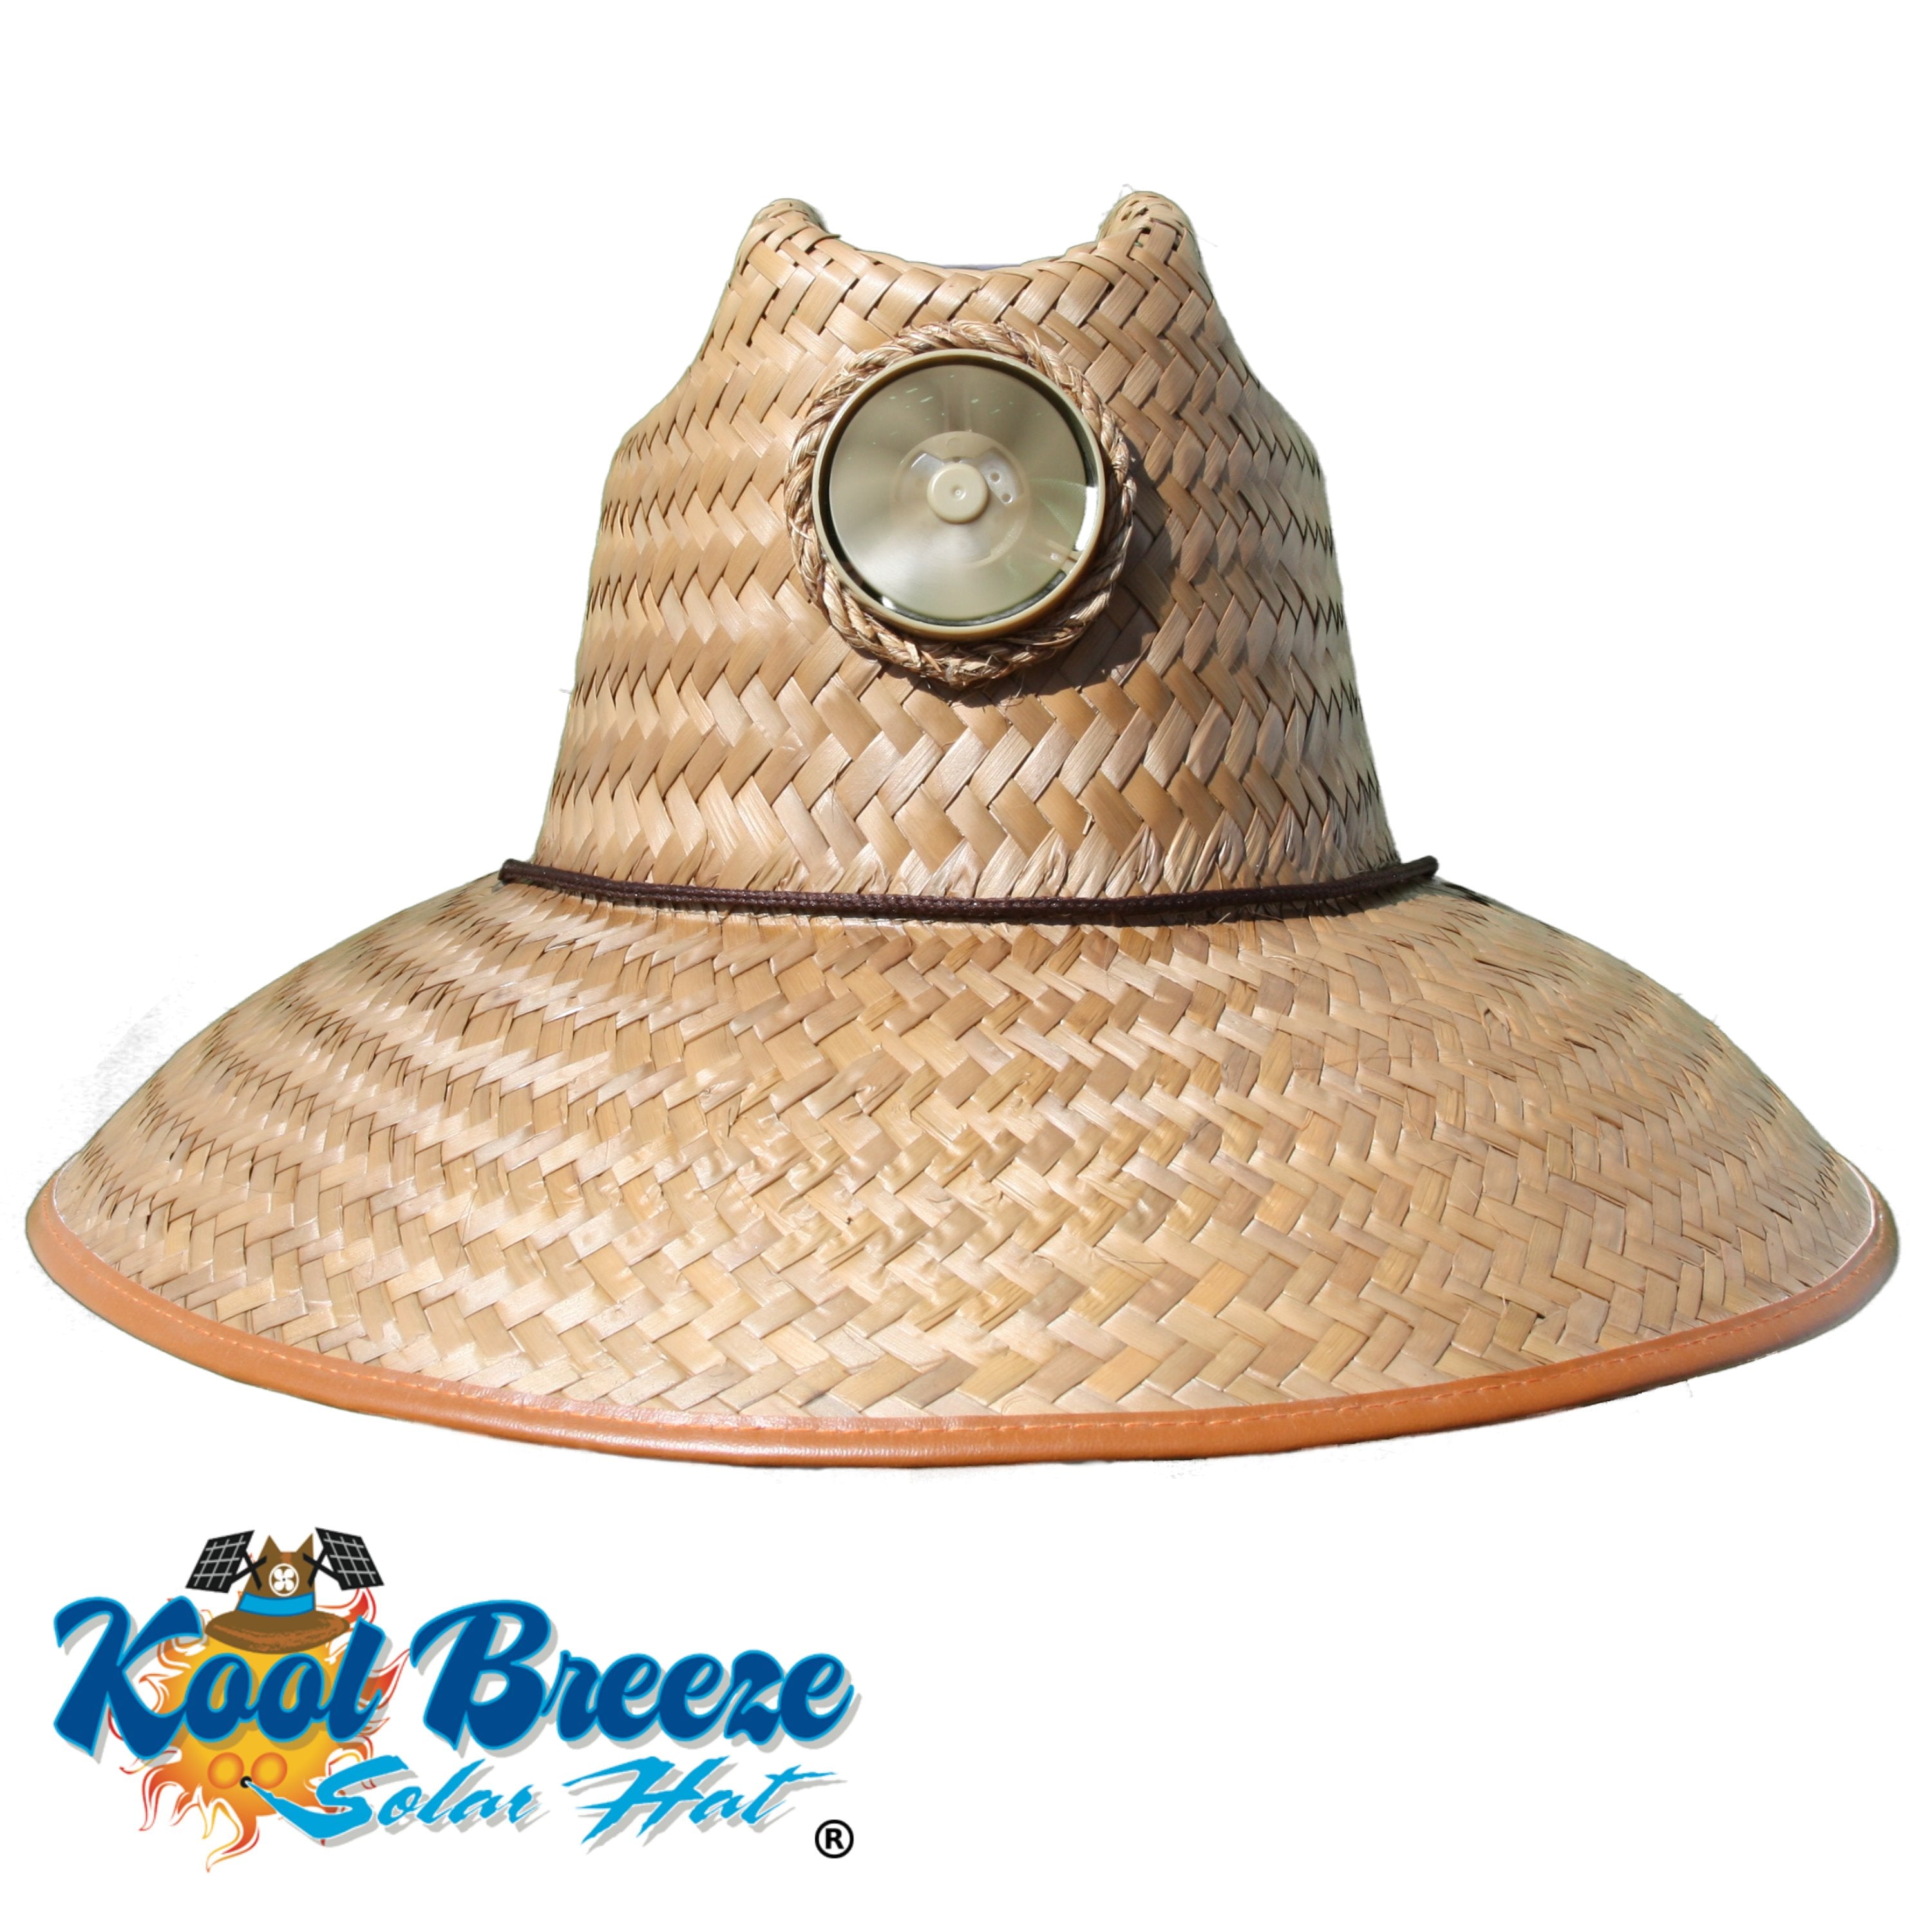 8 Kool Breeze Solar Hat ideas